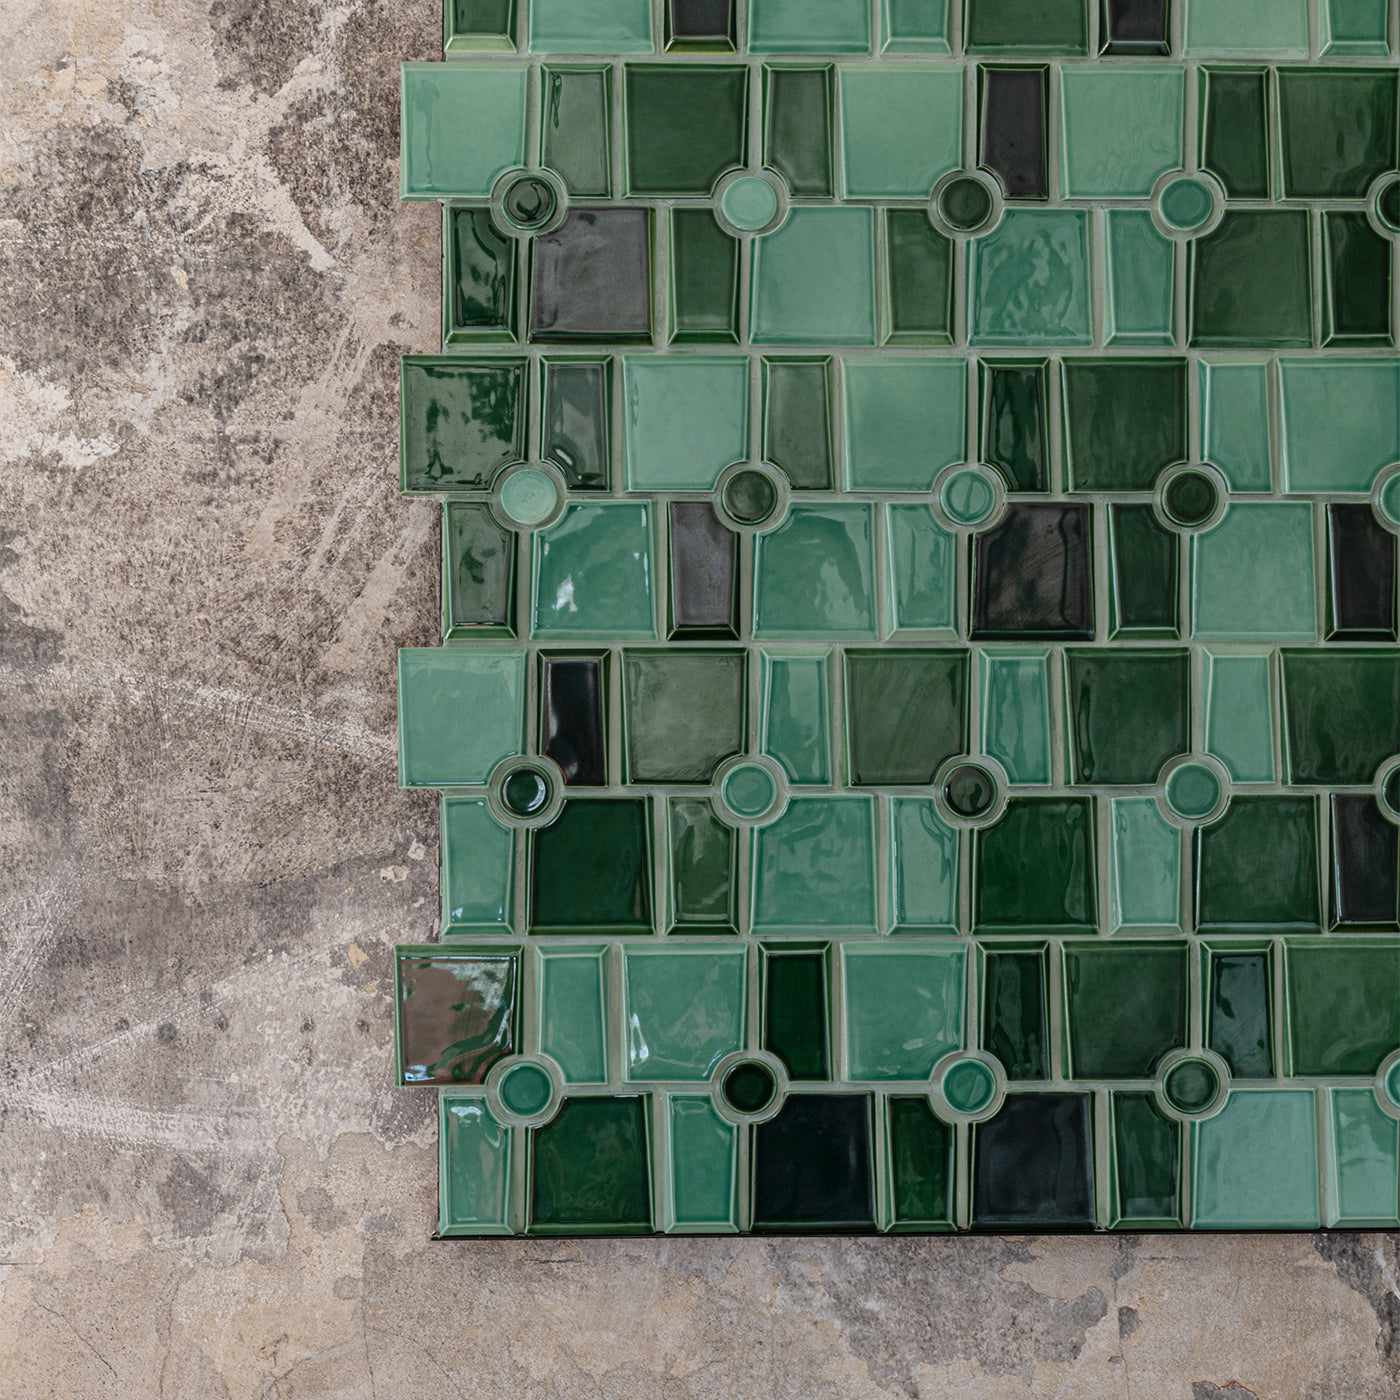 Maya 5 Green Mosaic Wall Covering by Giacomo Totti - Alternative view 1